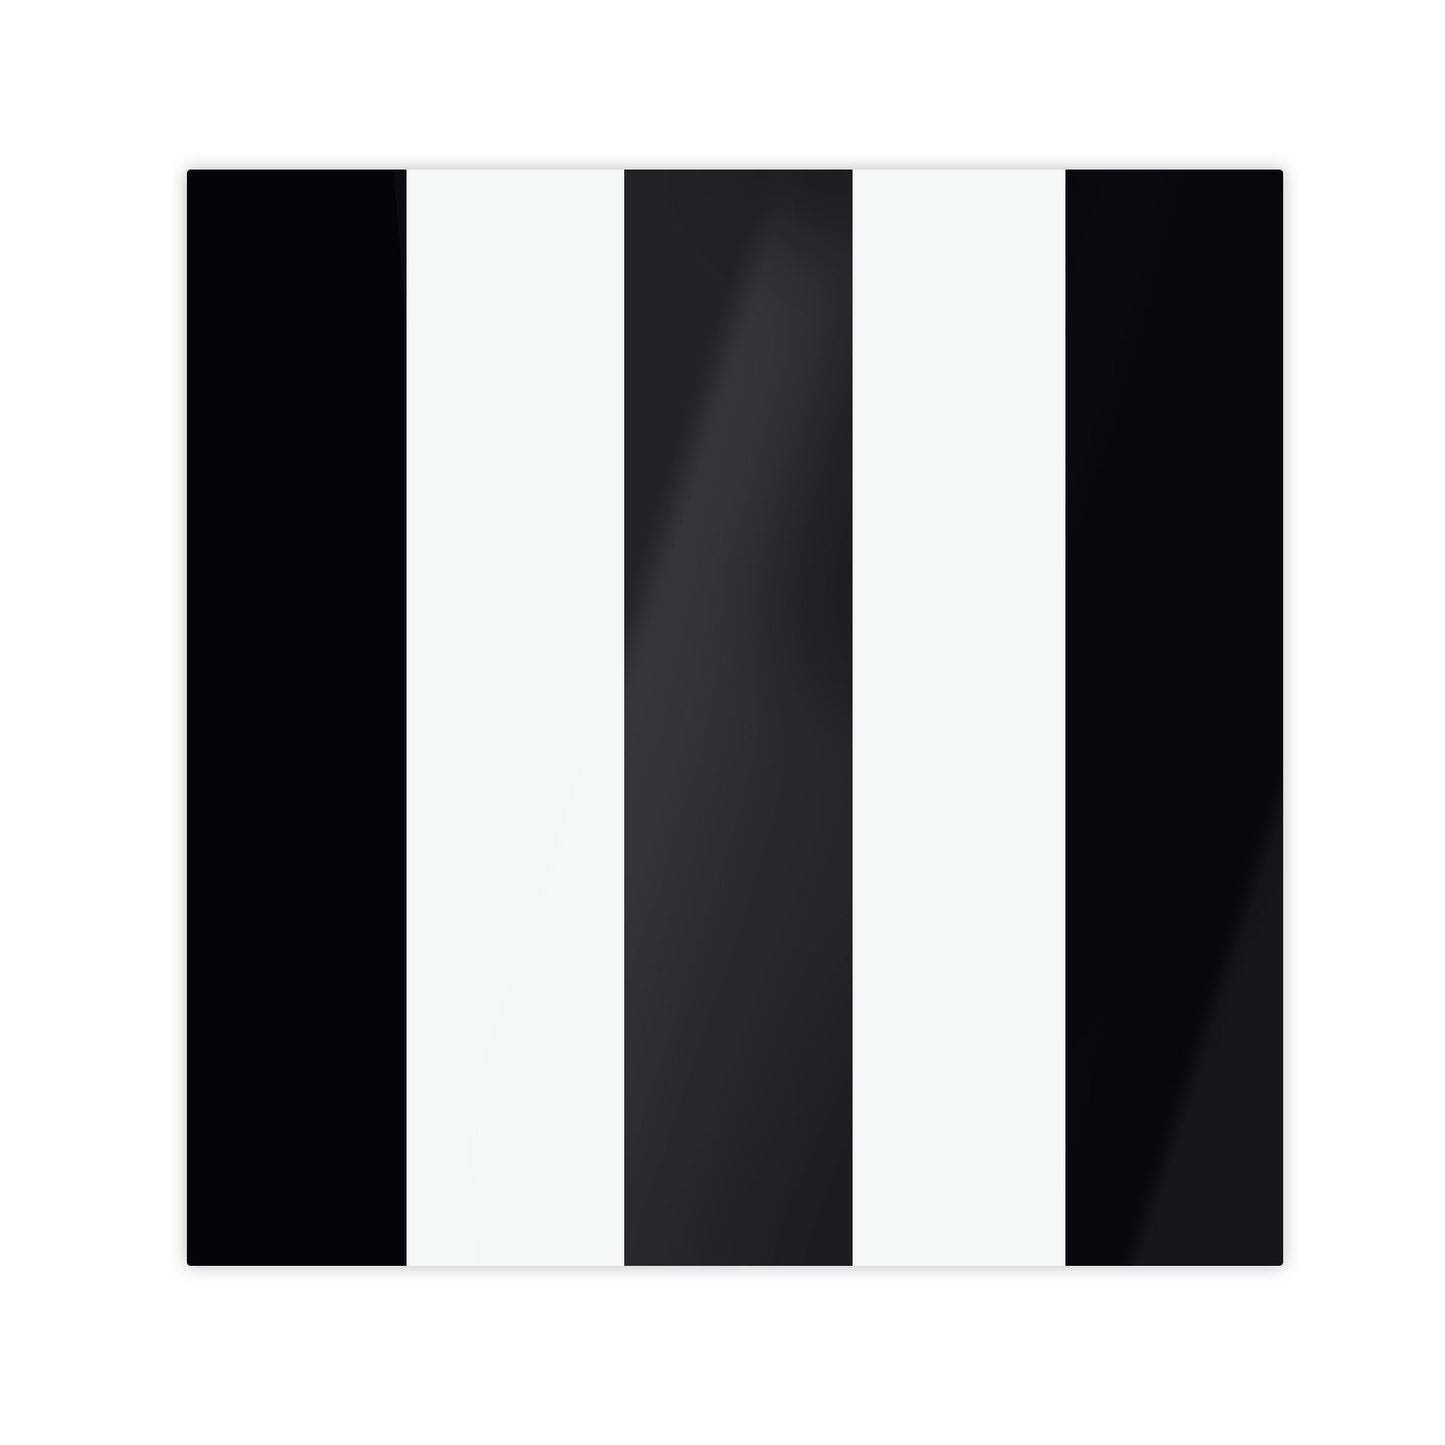 Tovagliette laccate in bianco e nero – Set di 4